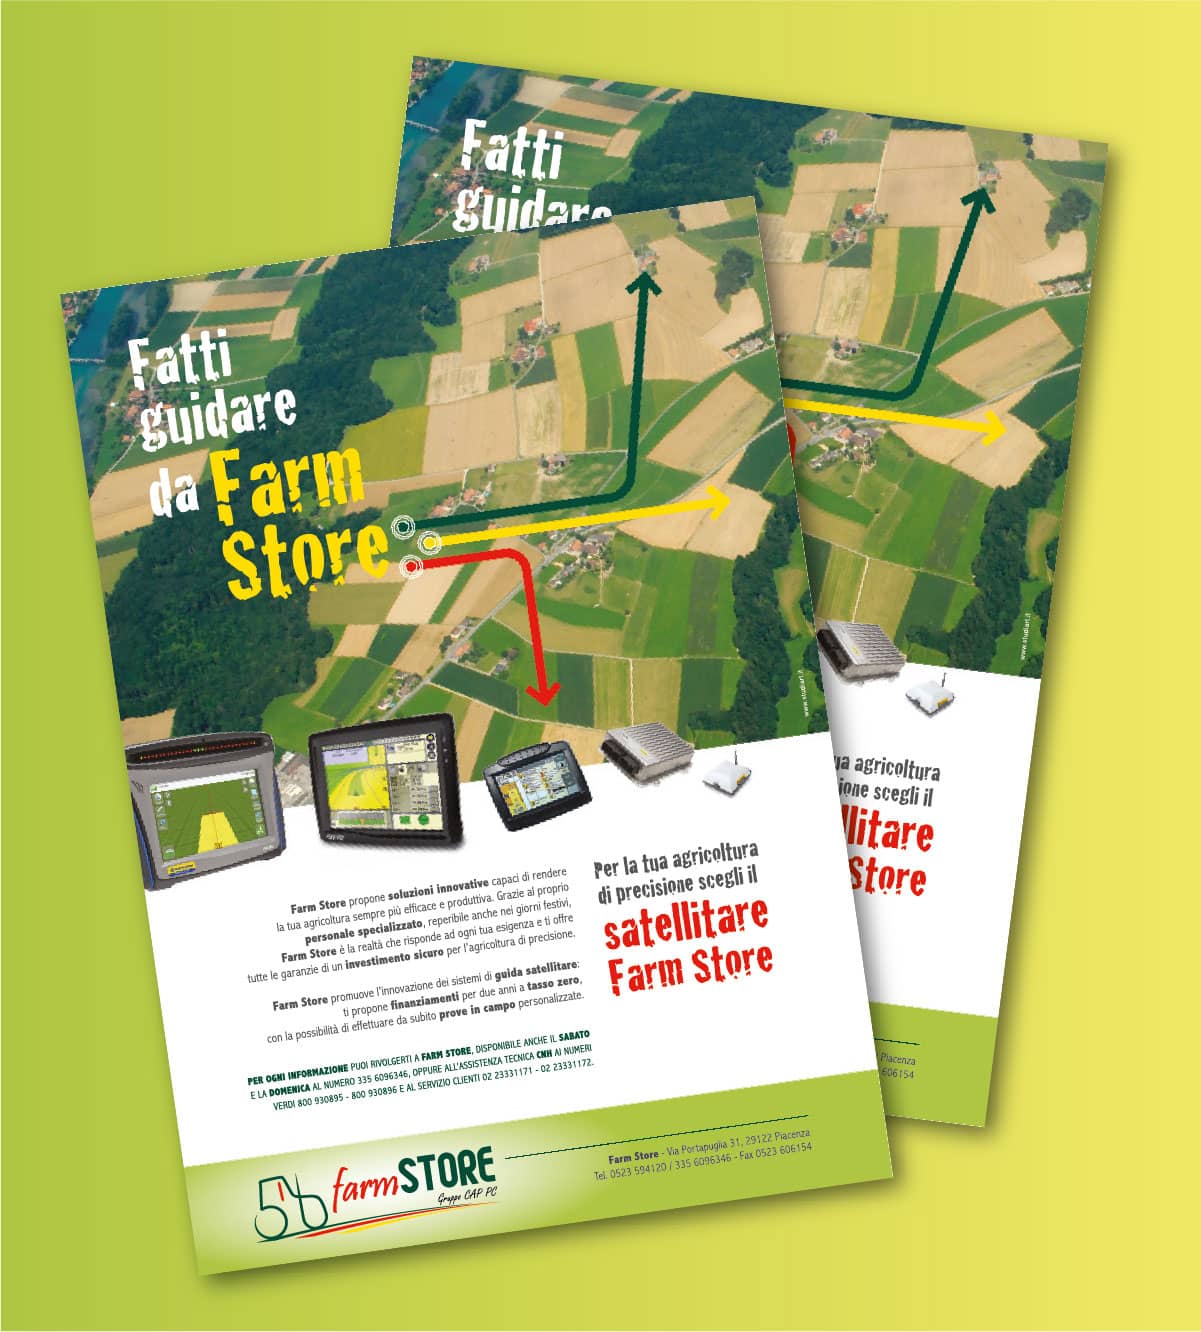 Farm Store – Un set d’iniziative per promuovere un nuovo punto di riferimento nell’agricoltura moderna